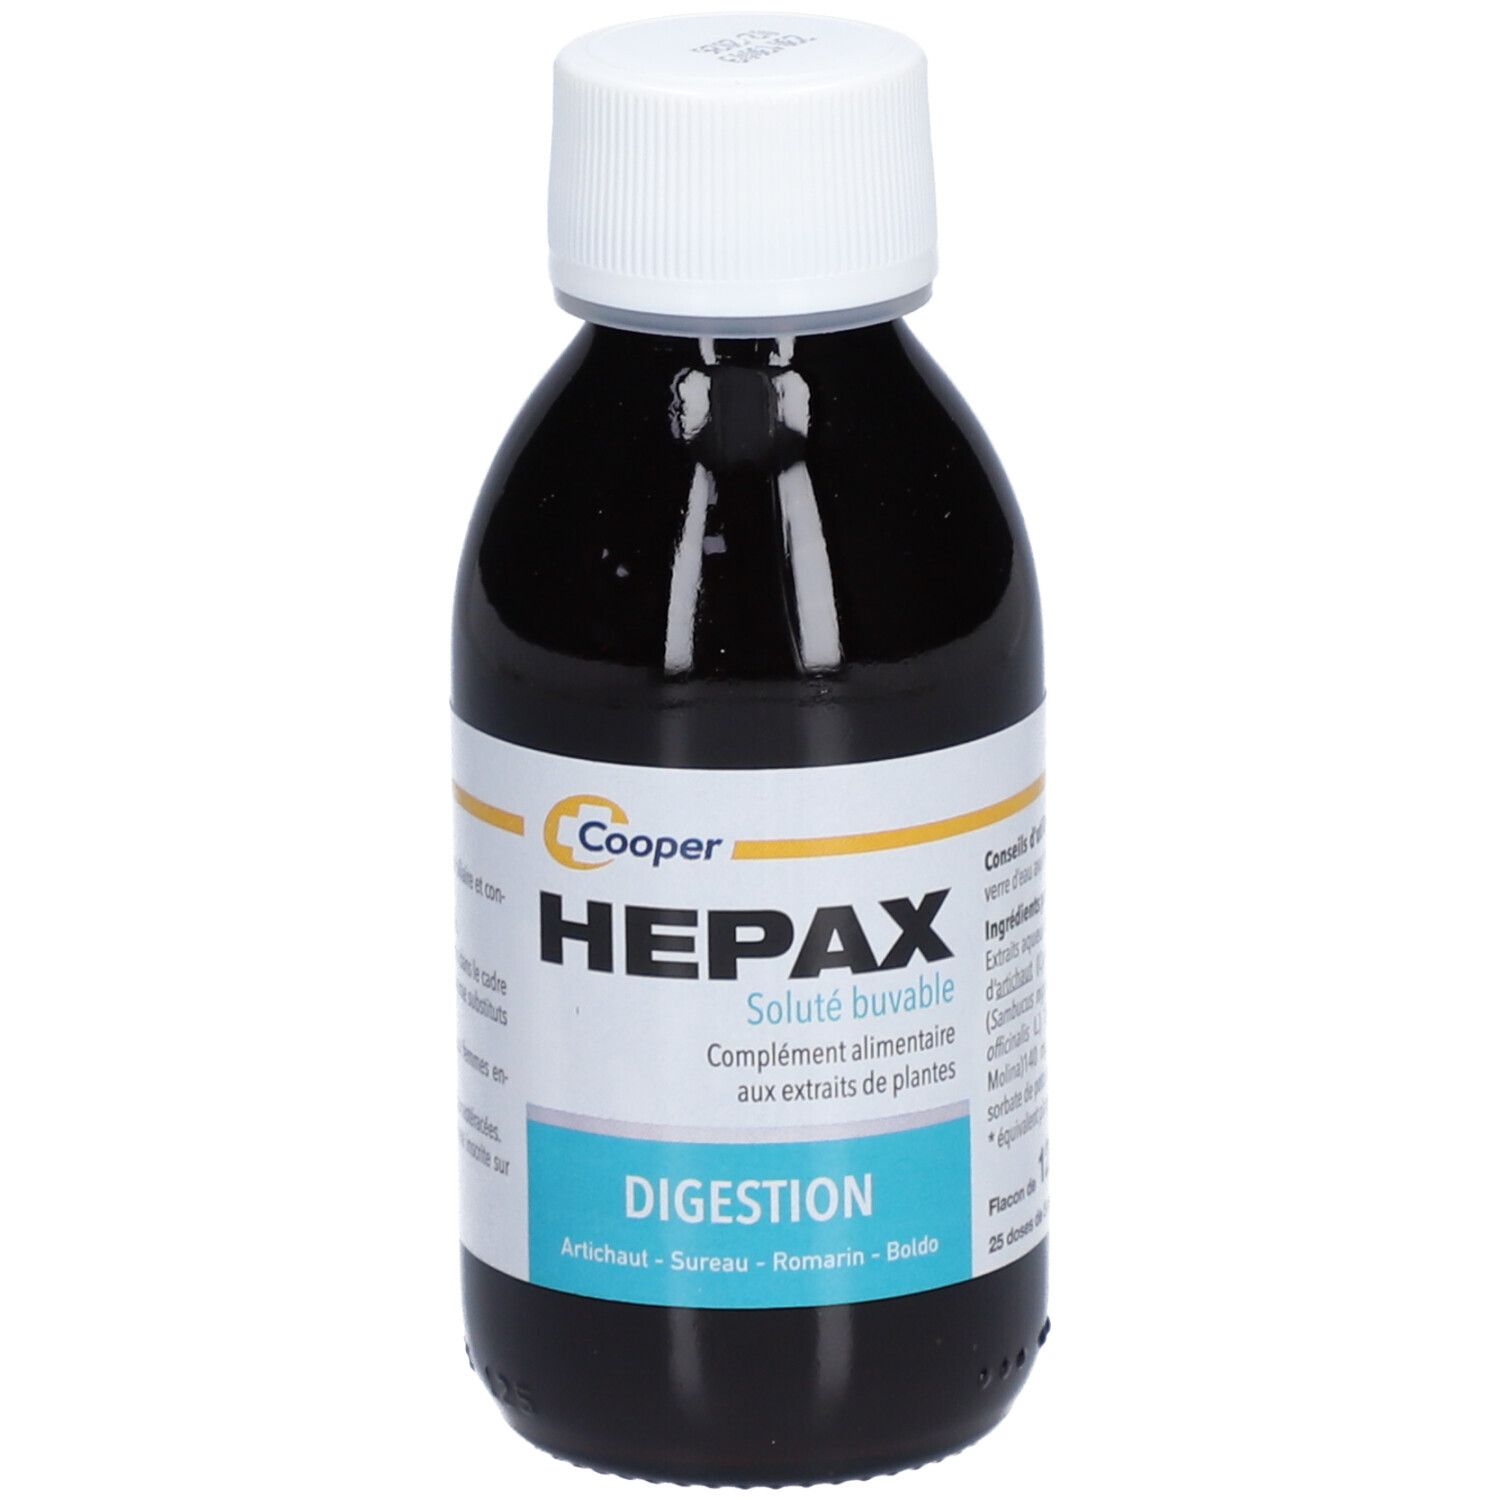 Hepax Digestion - Solution buvable, complément alimentaire digestif aux extraits végétaux.